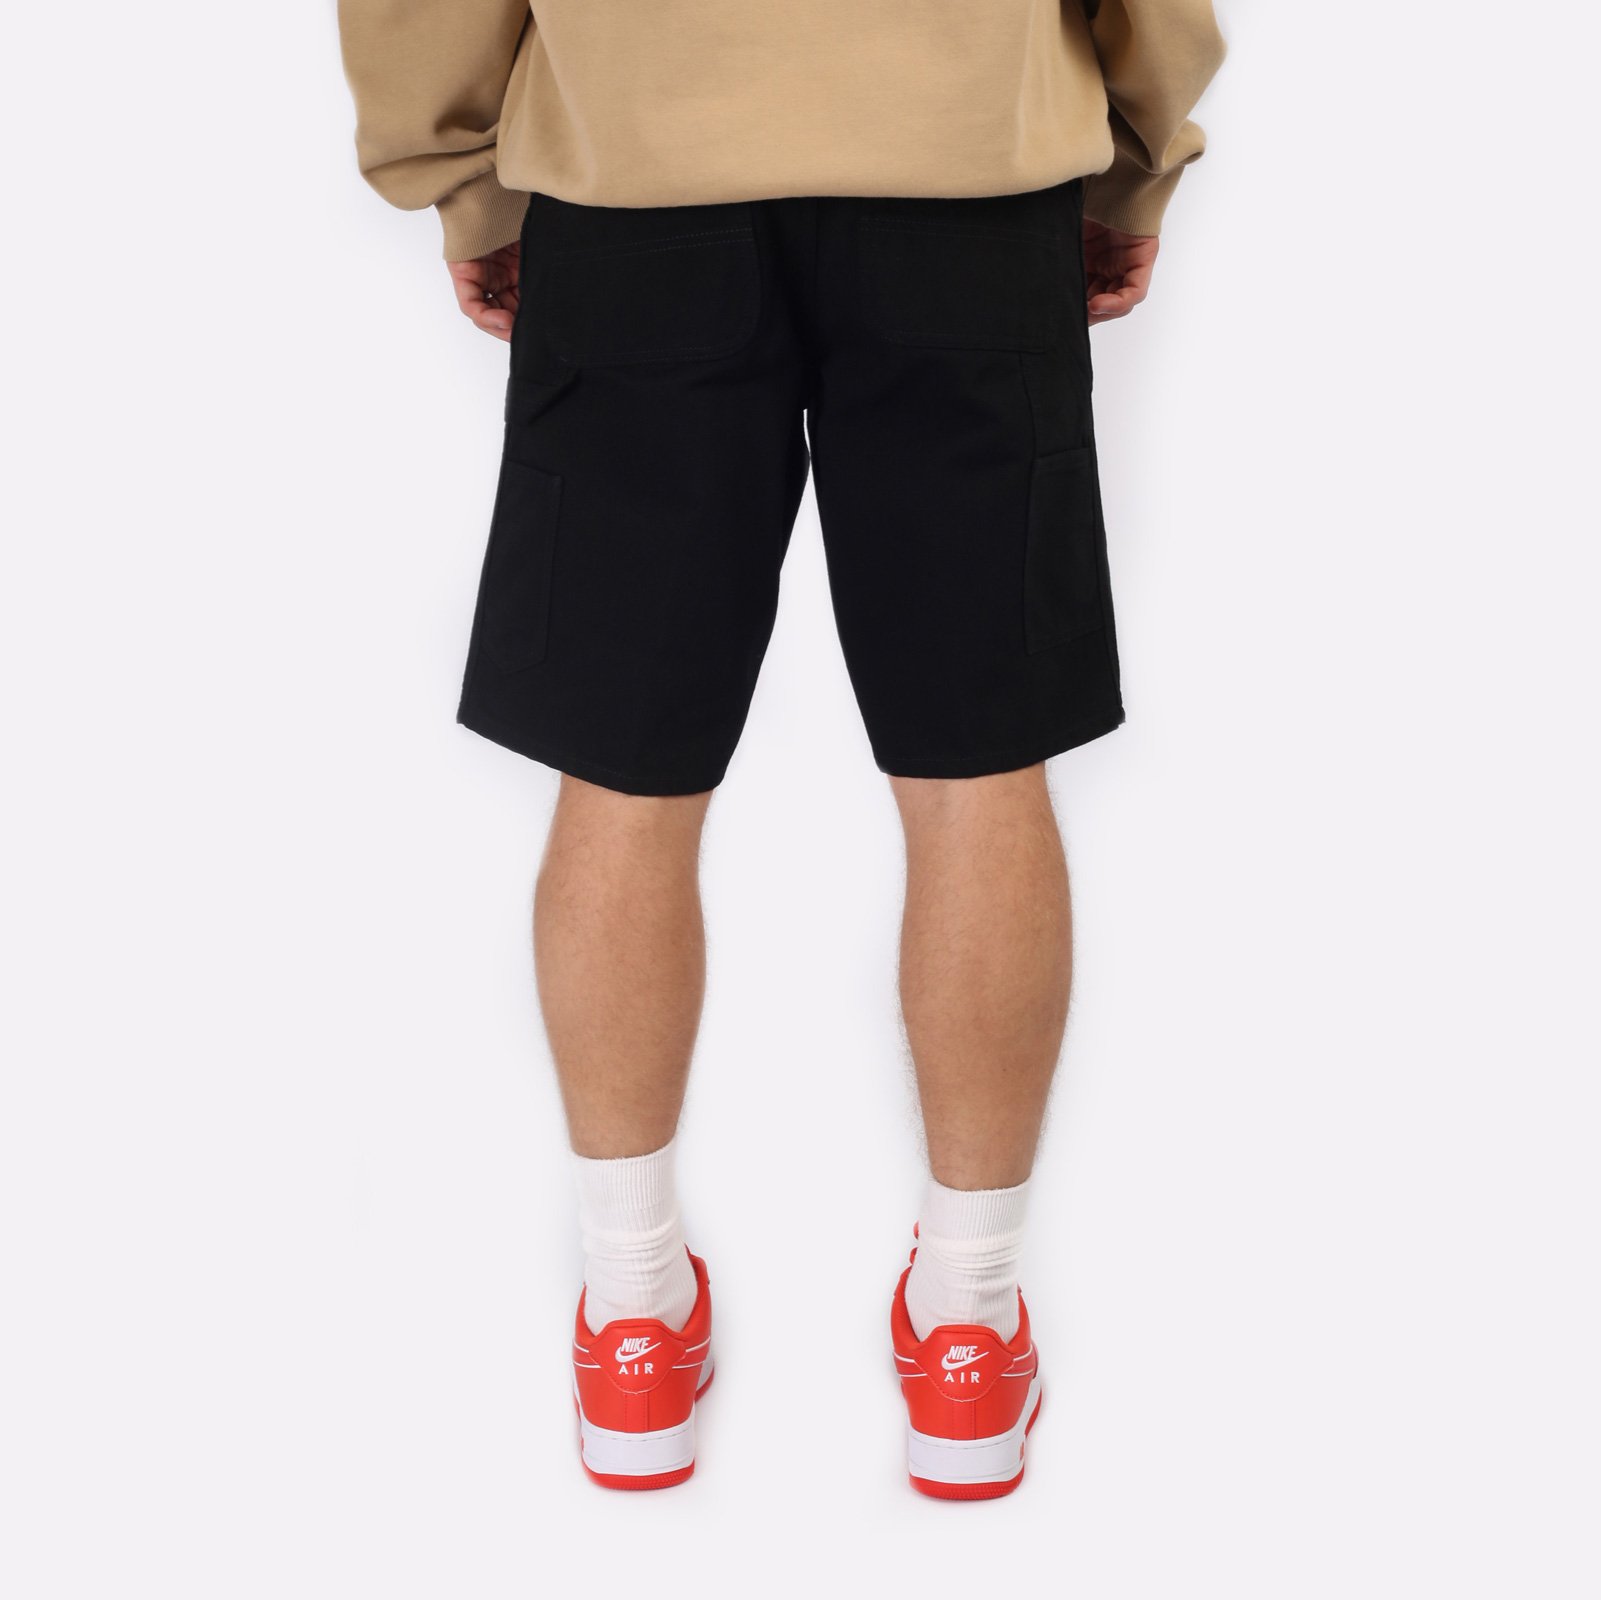 мужские черные шорты Carhartt WIP Single Knee Short I027942-black - цена, описание, фото 2